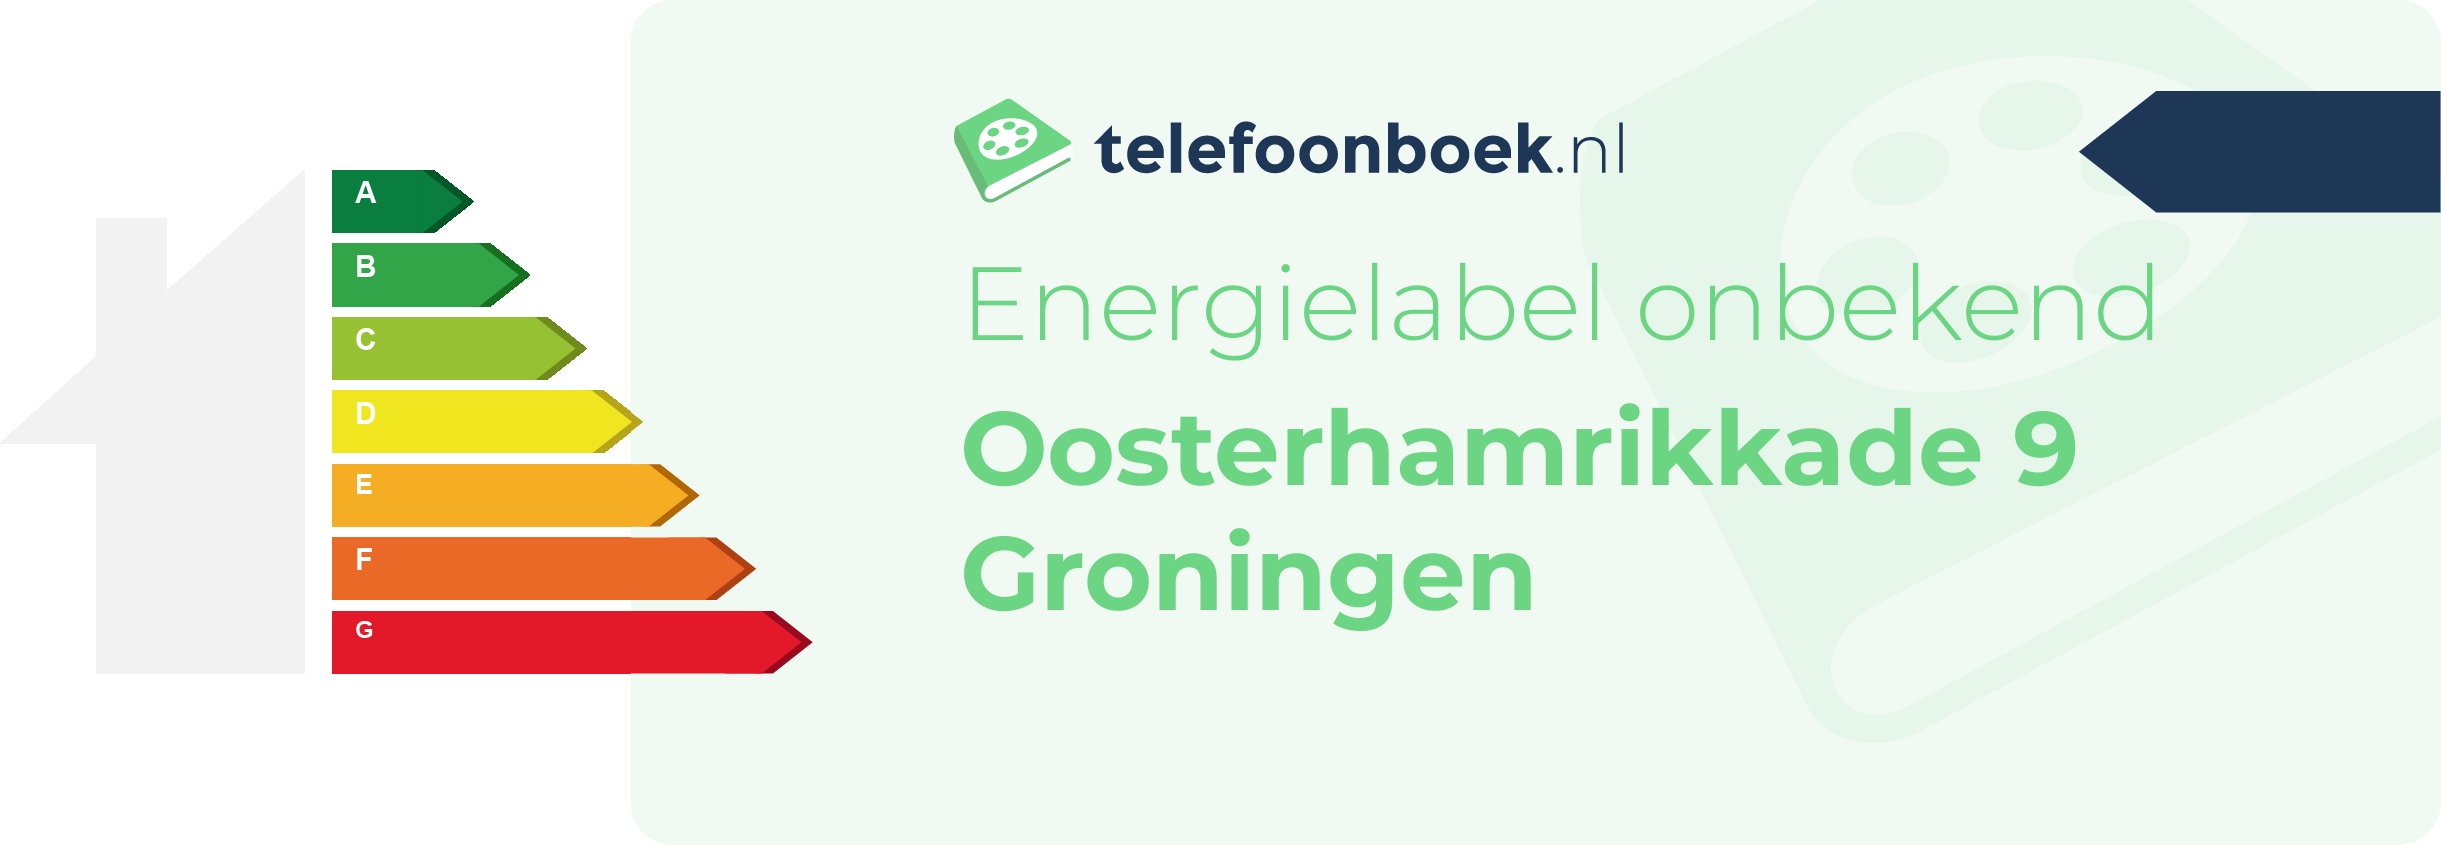 Energielabel Oosterhamrikkade 9 Groningen